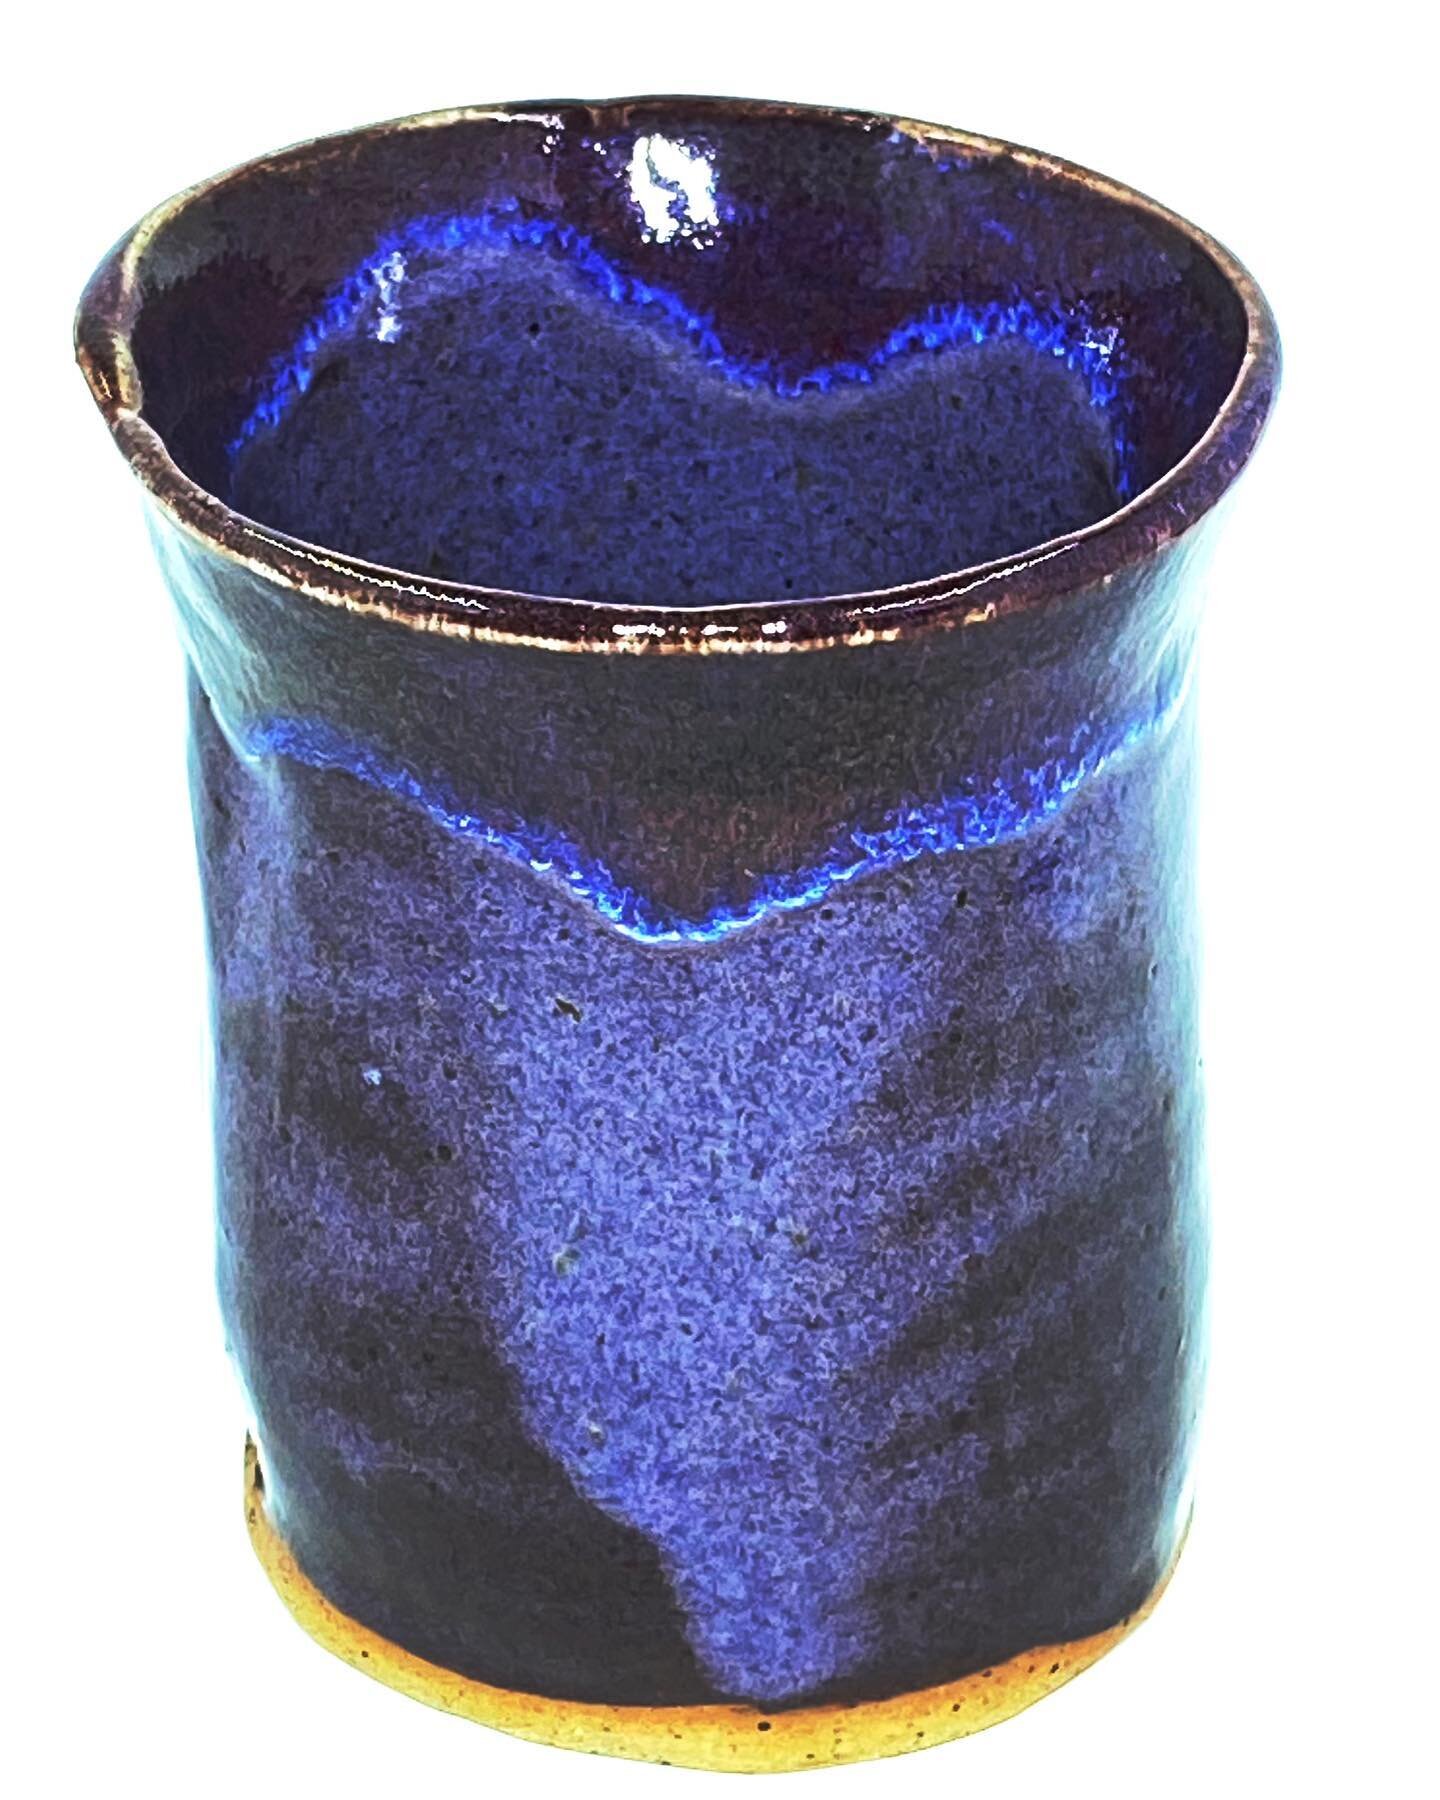 Purple mug #amacoglazes #handmade #alabamamade #alabamaartist #purple